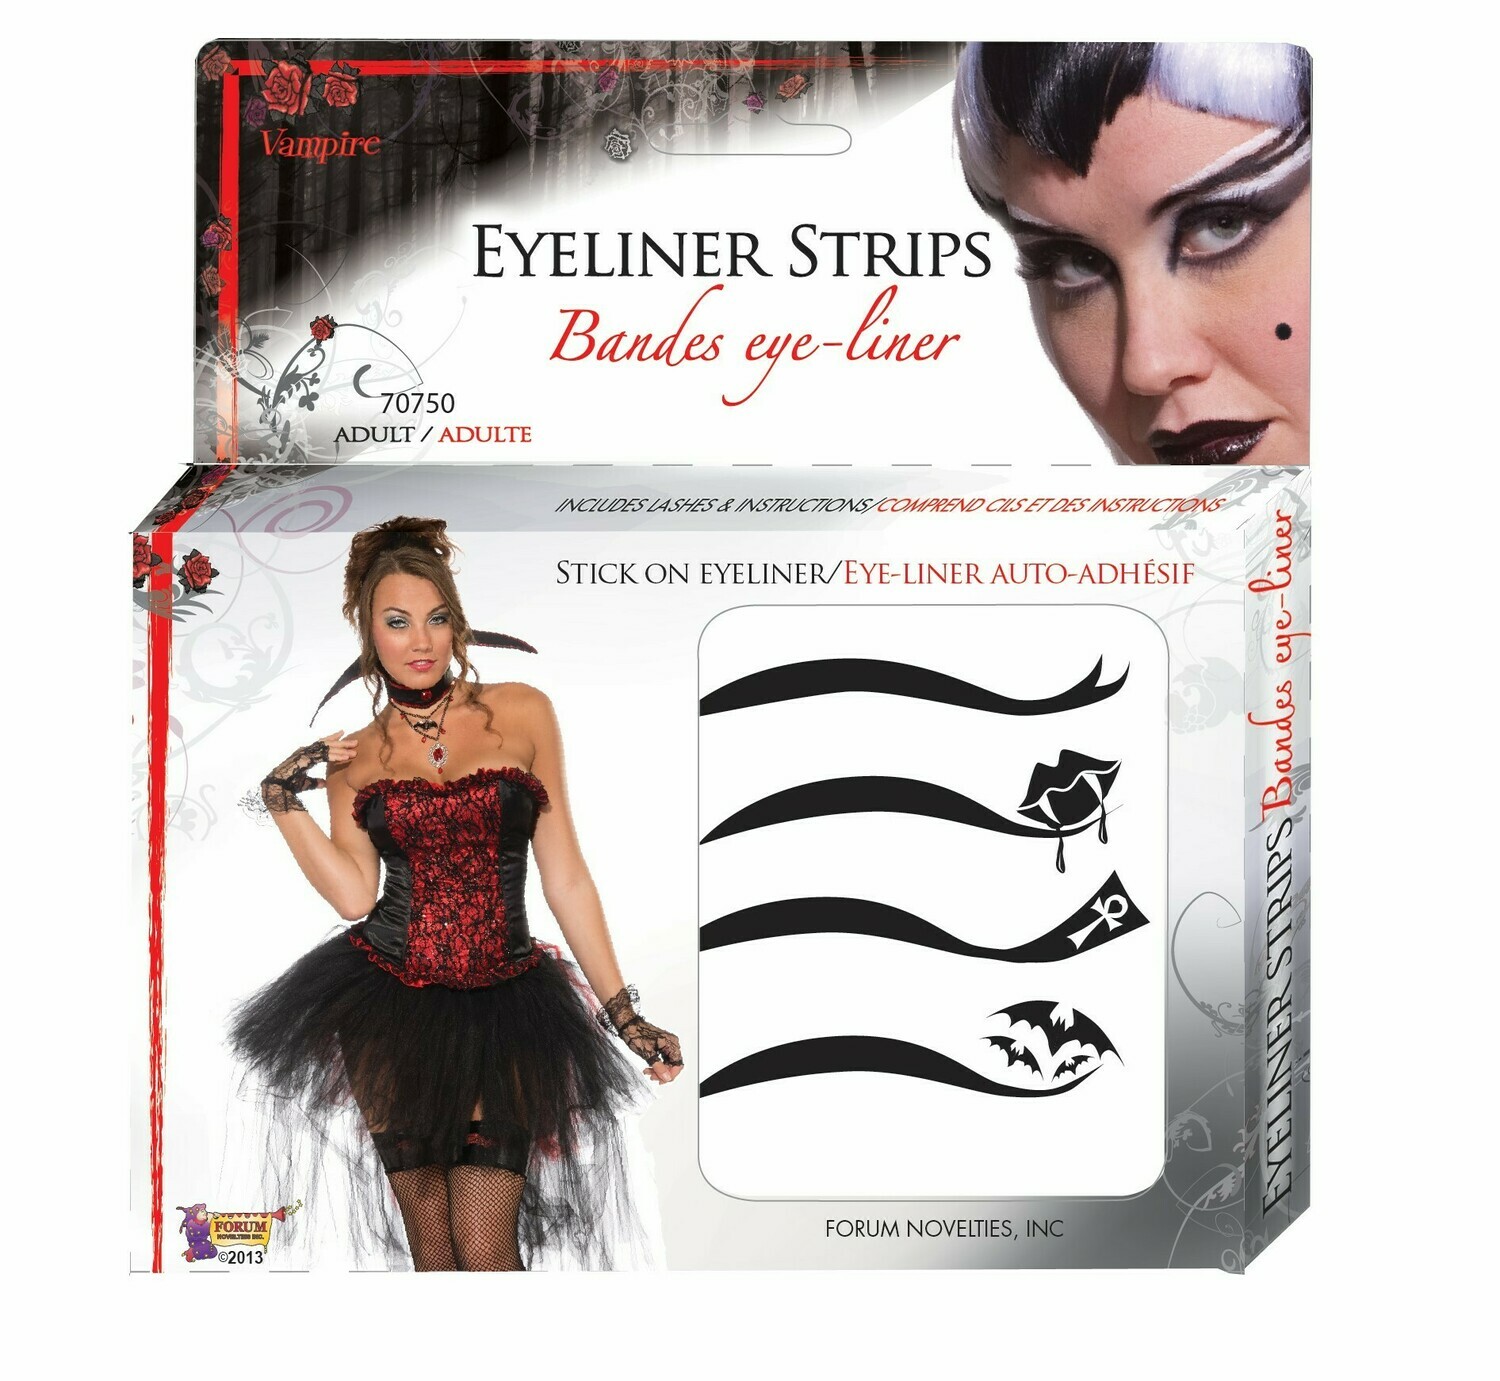 Vampiress Eyeliner Kit